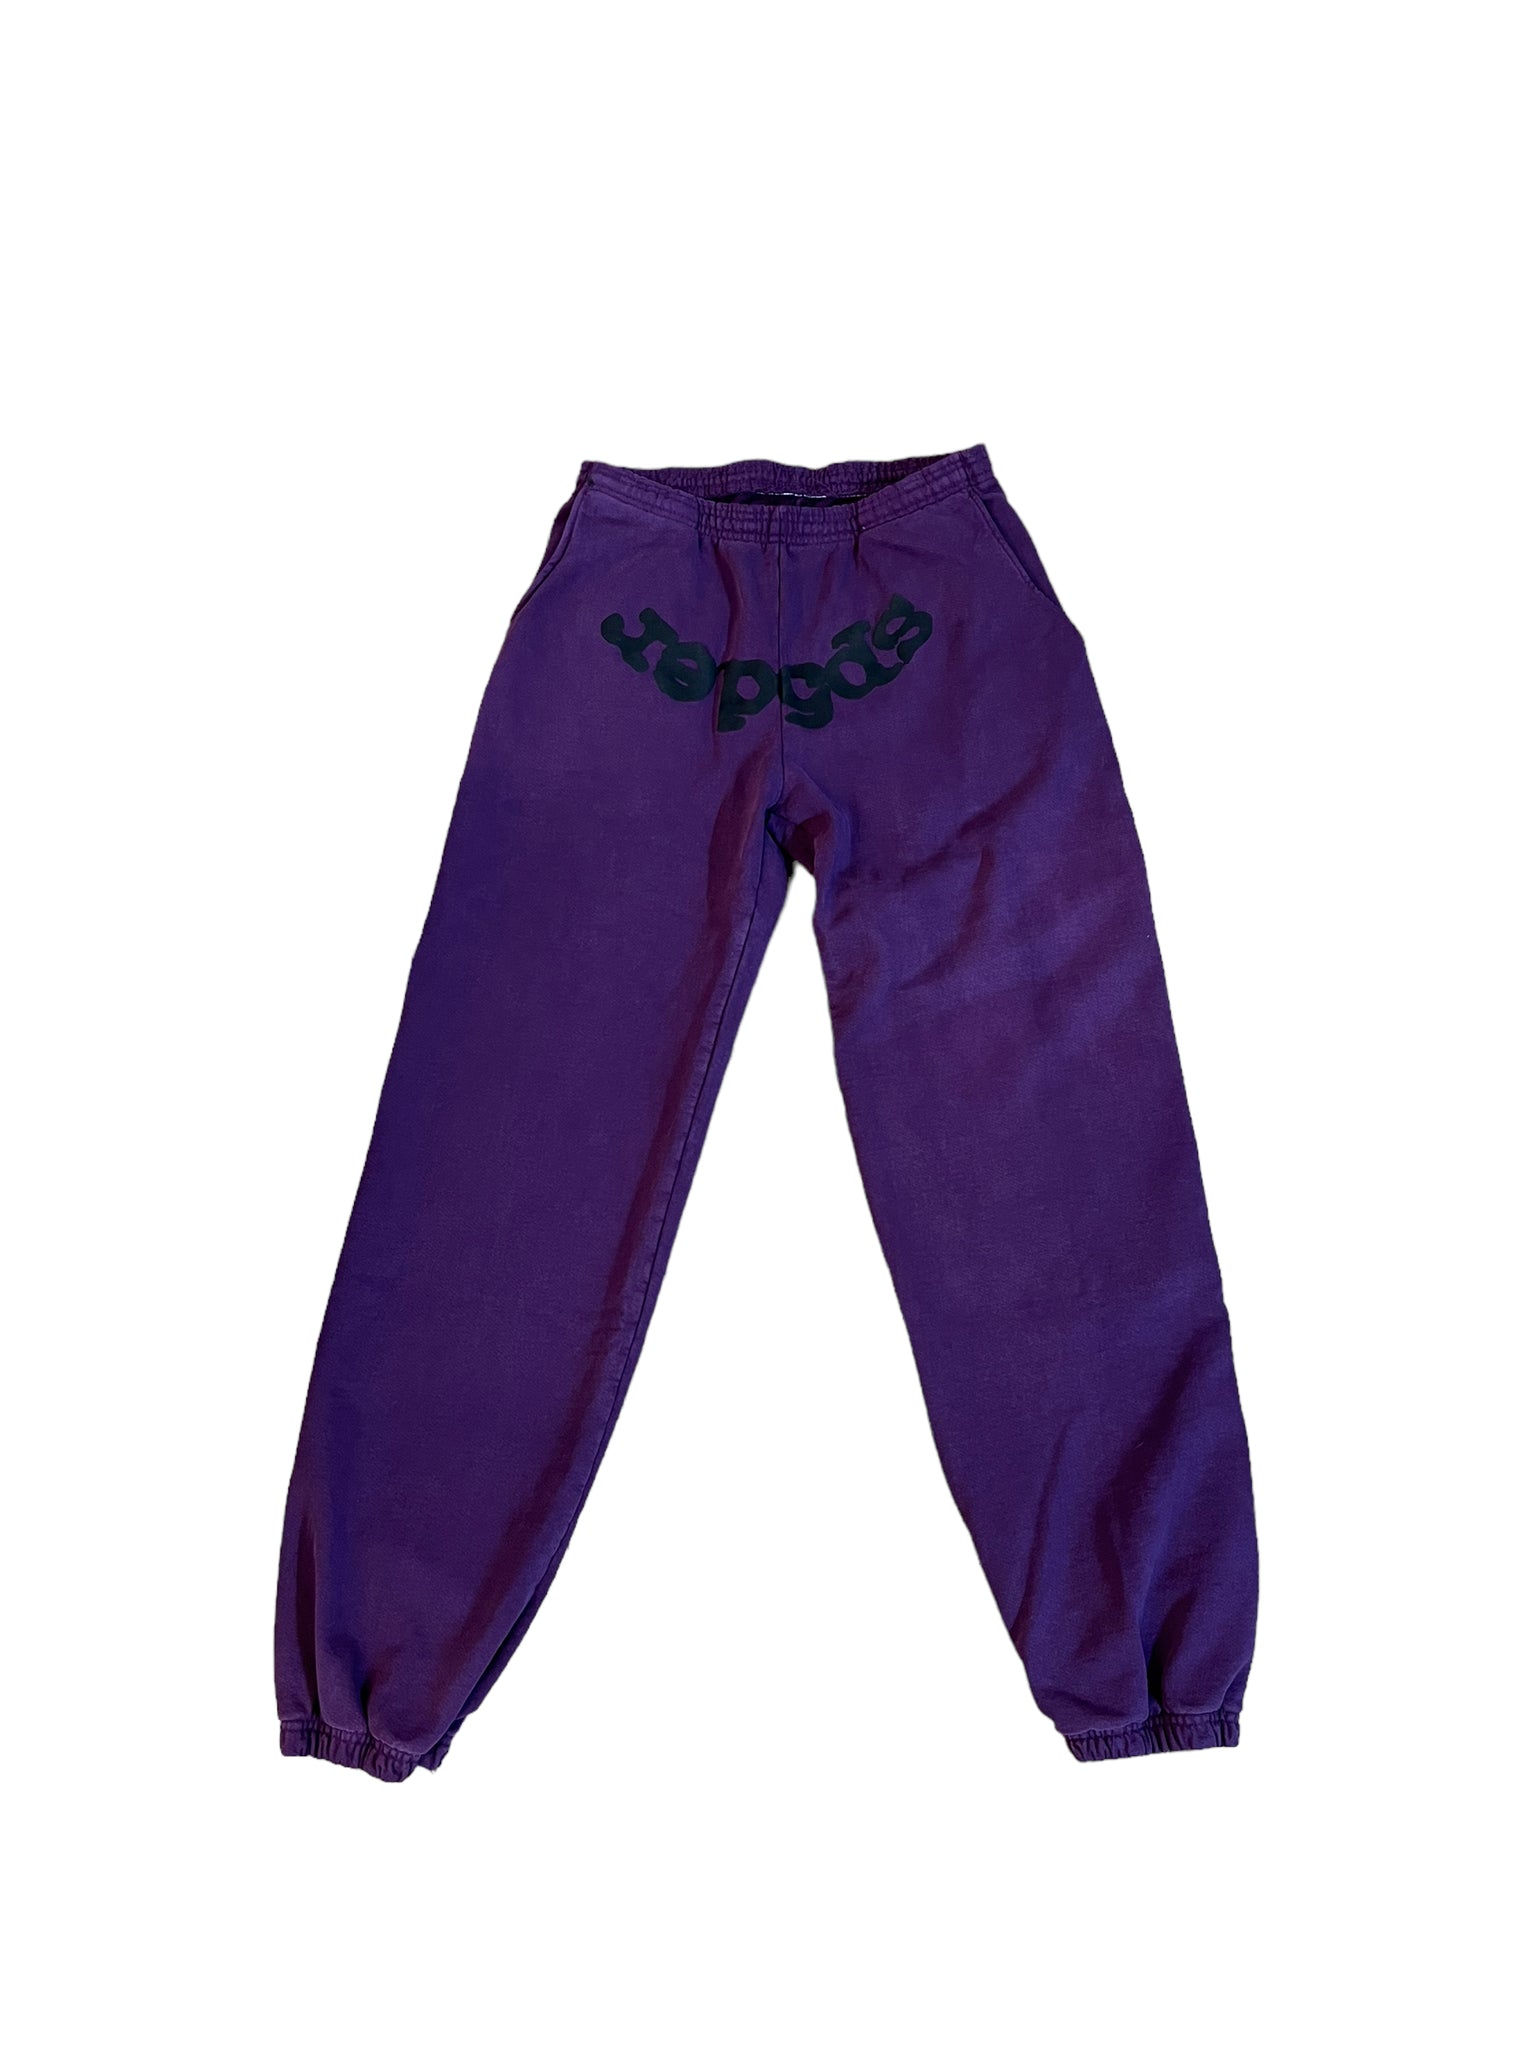 Sp5der Purple Sweatpants